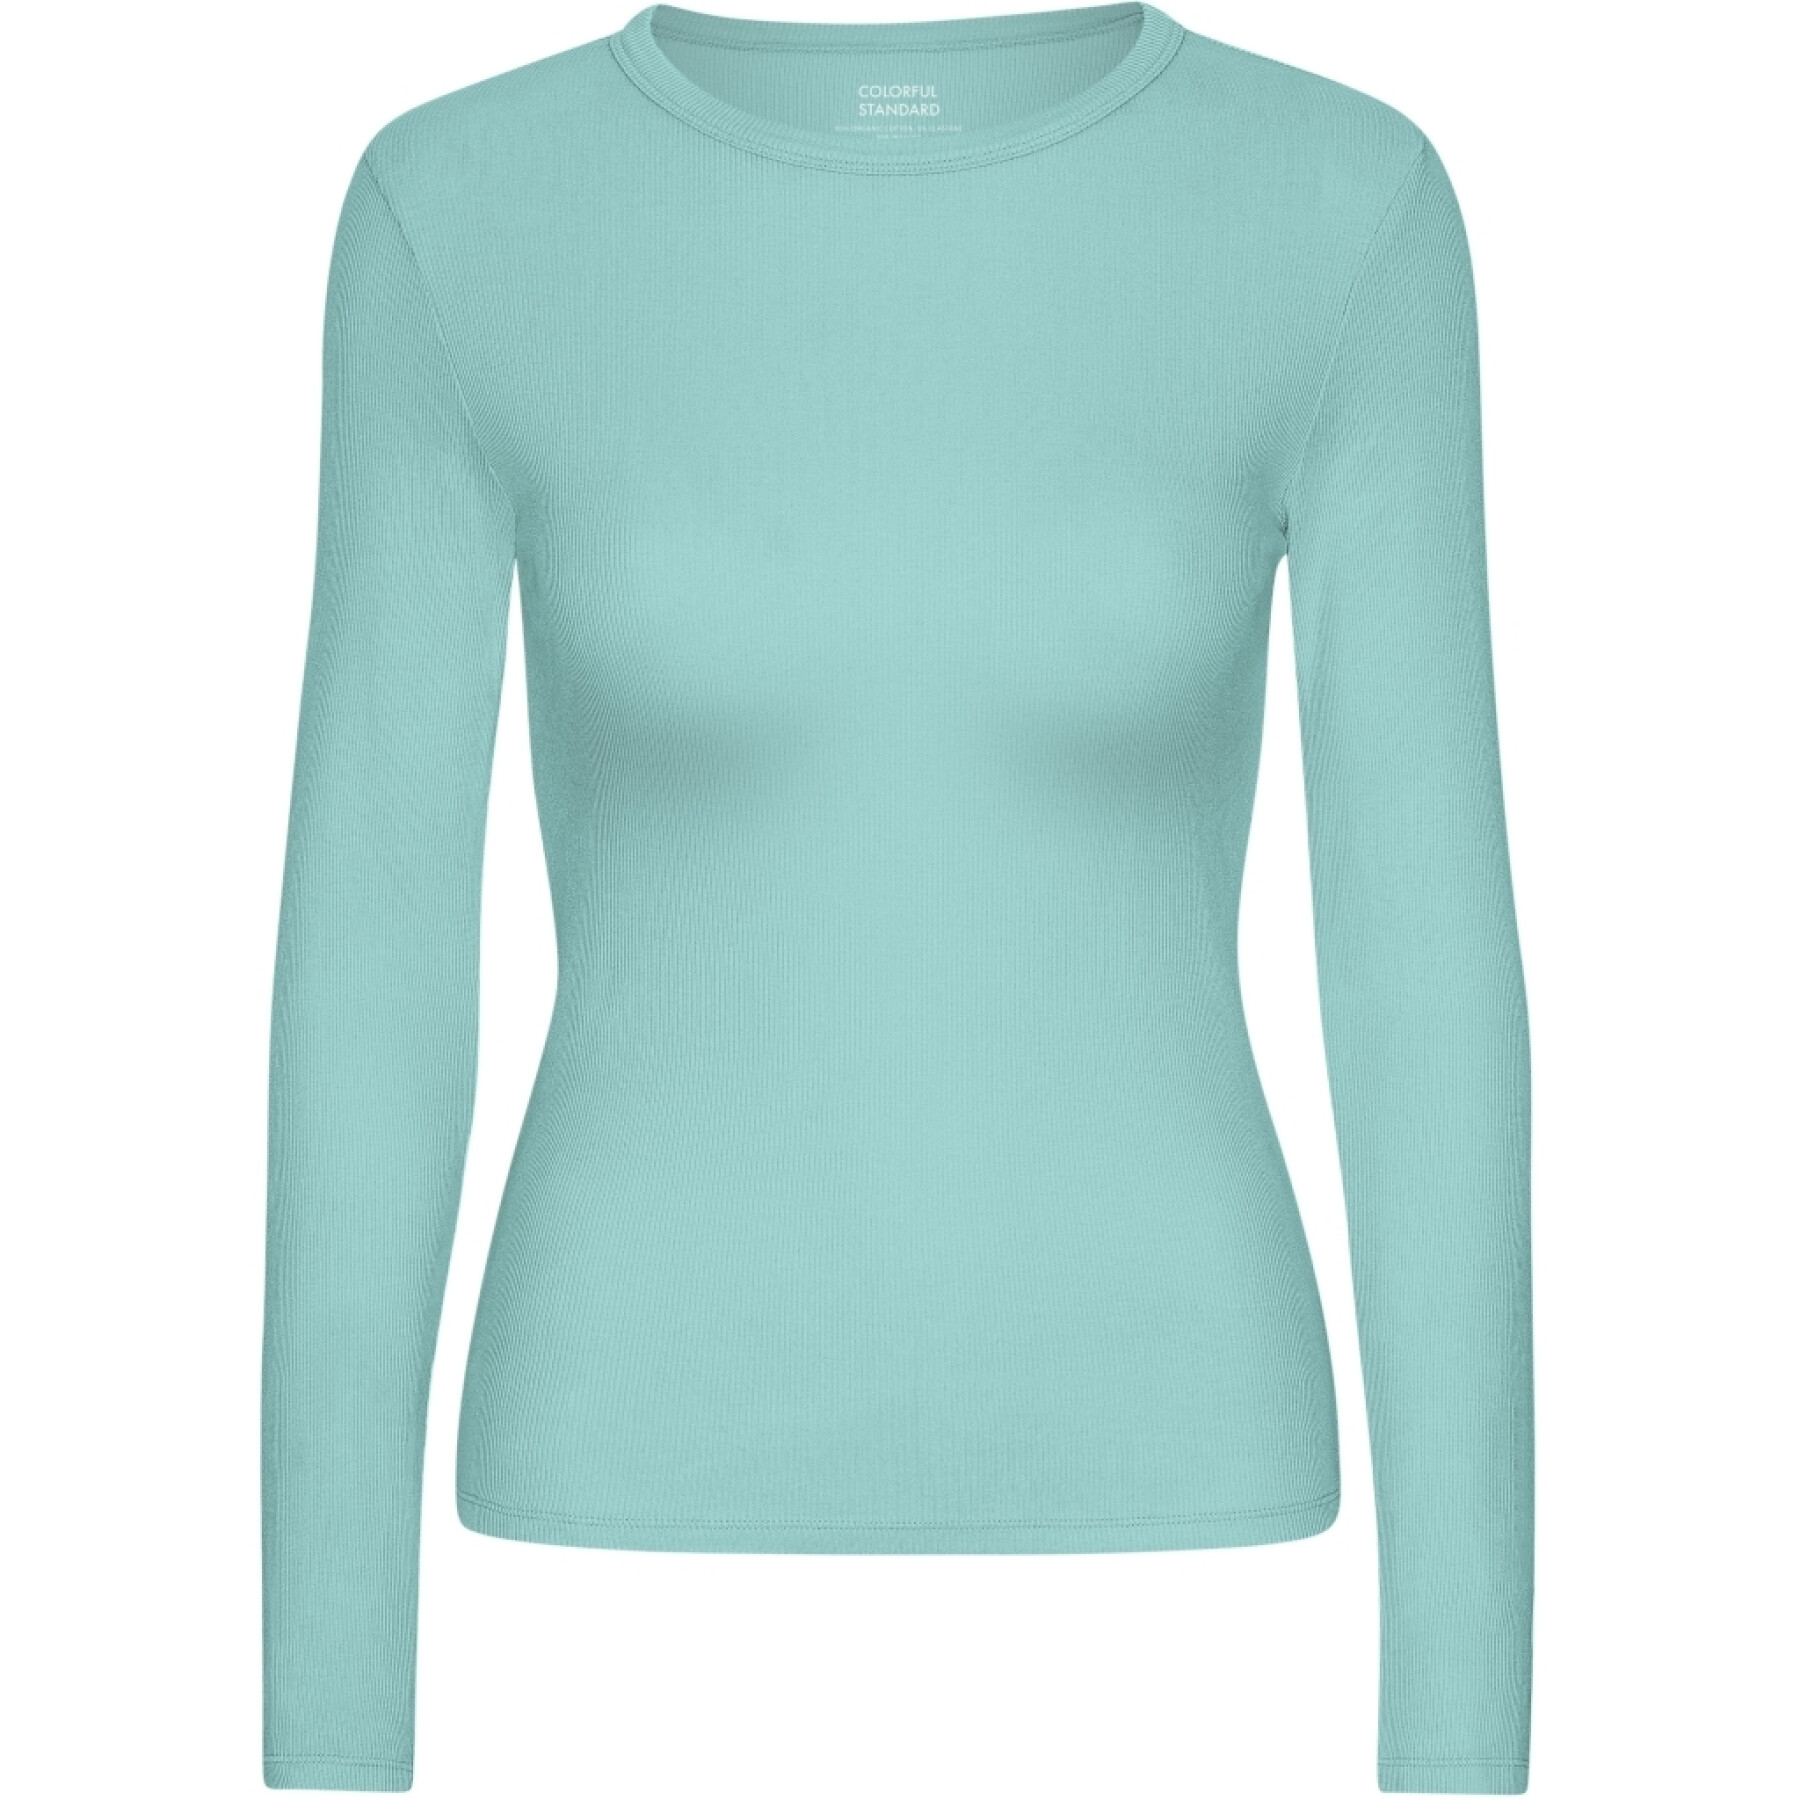 T-shirt da donna a maniche lunghe Colorful Standard Organic Teal Blue